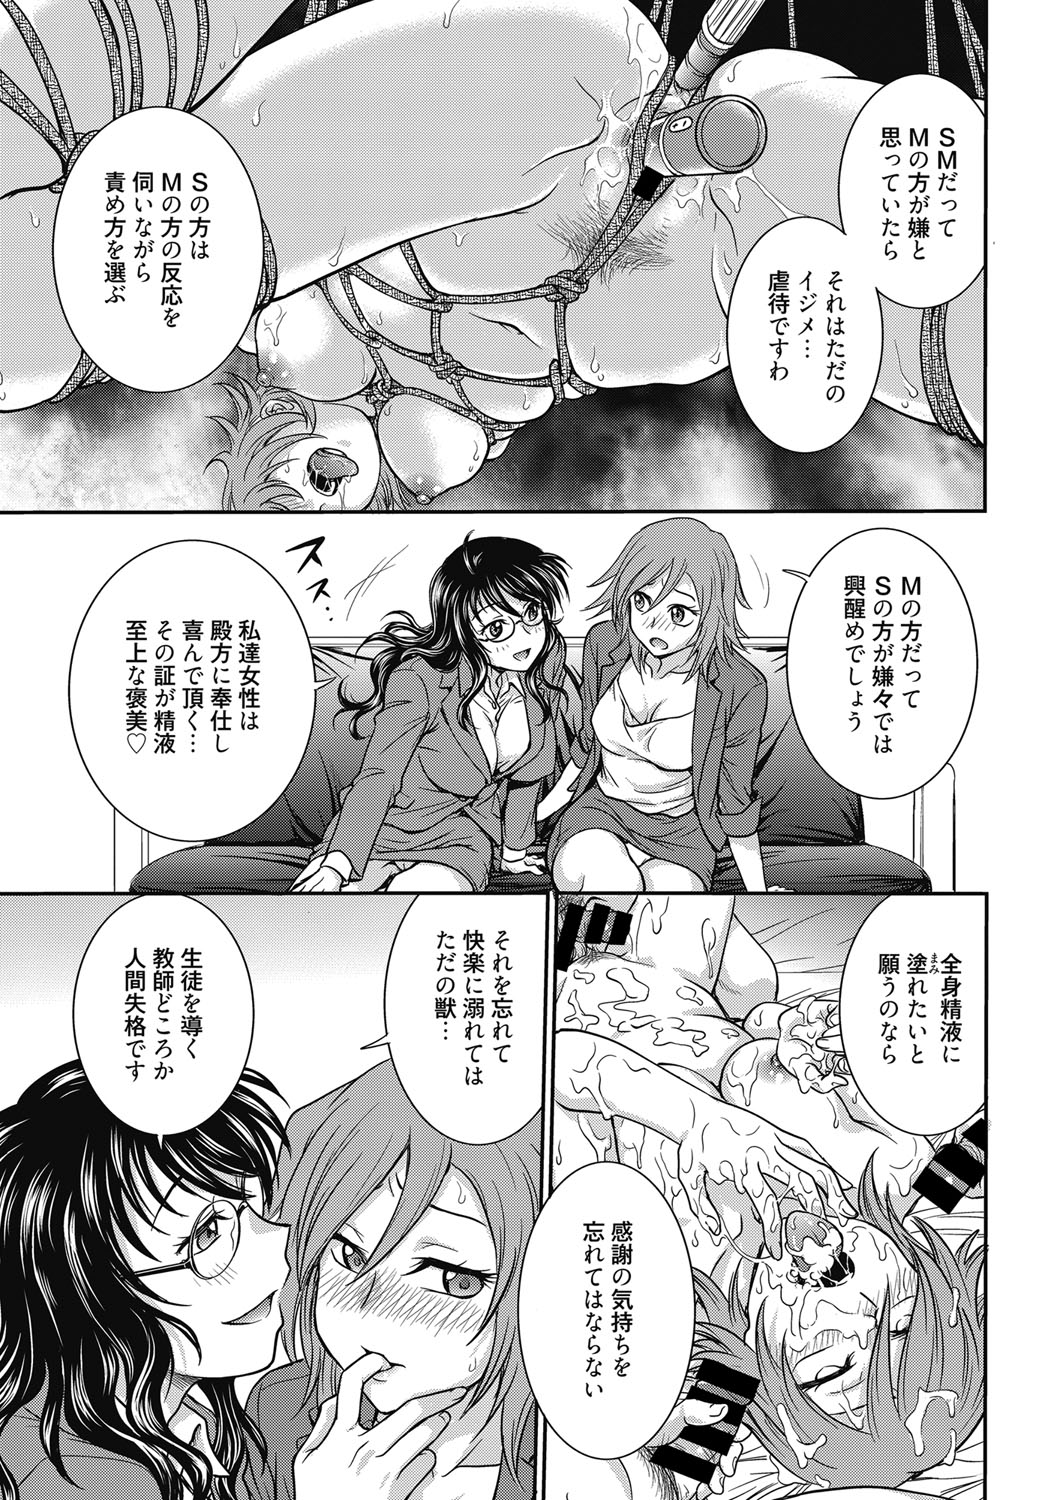 Web Manga Bangaichi Vol. 11 web 漫画ばんがいち Vol.11